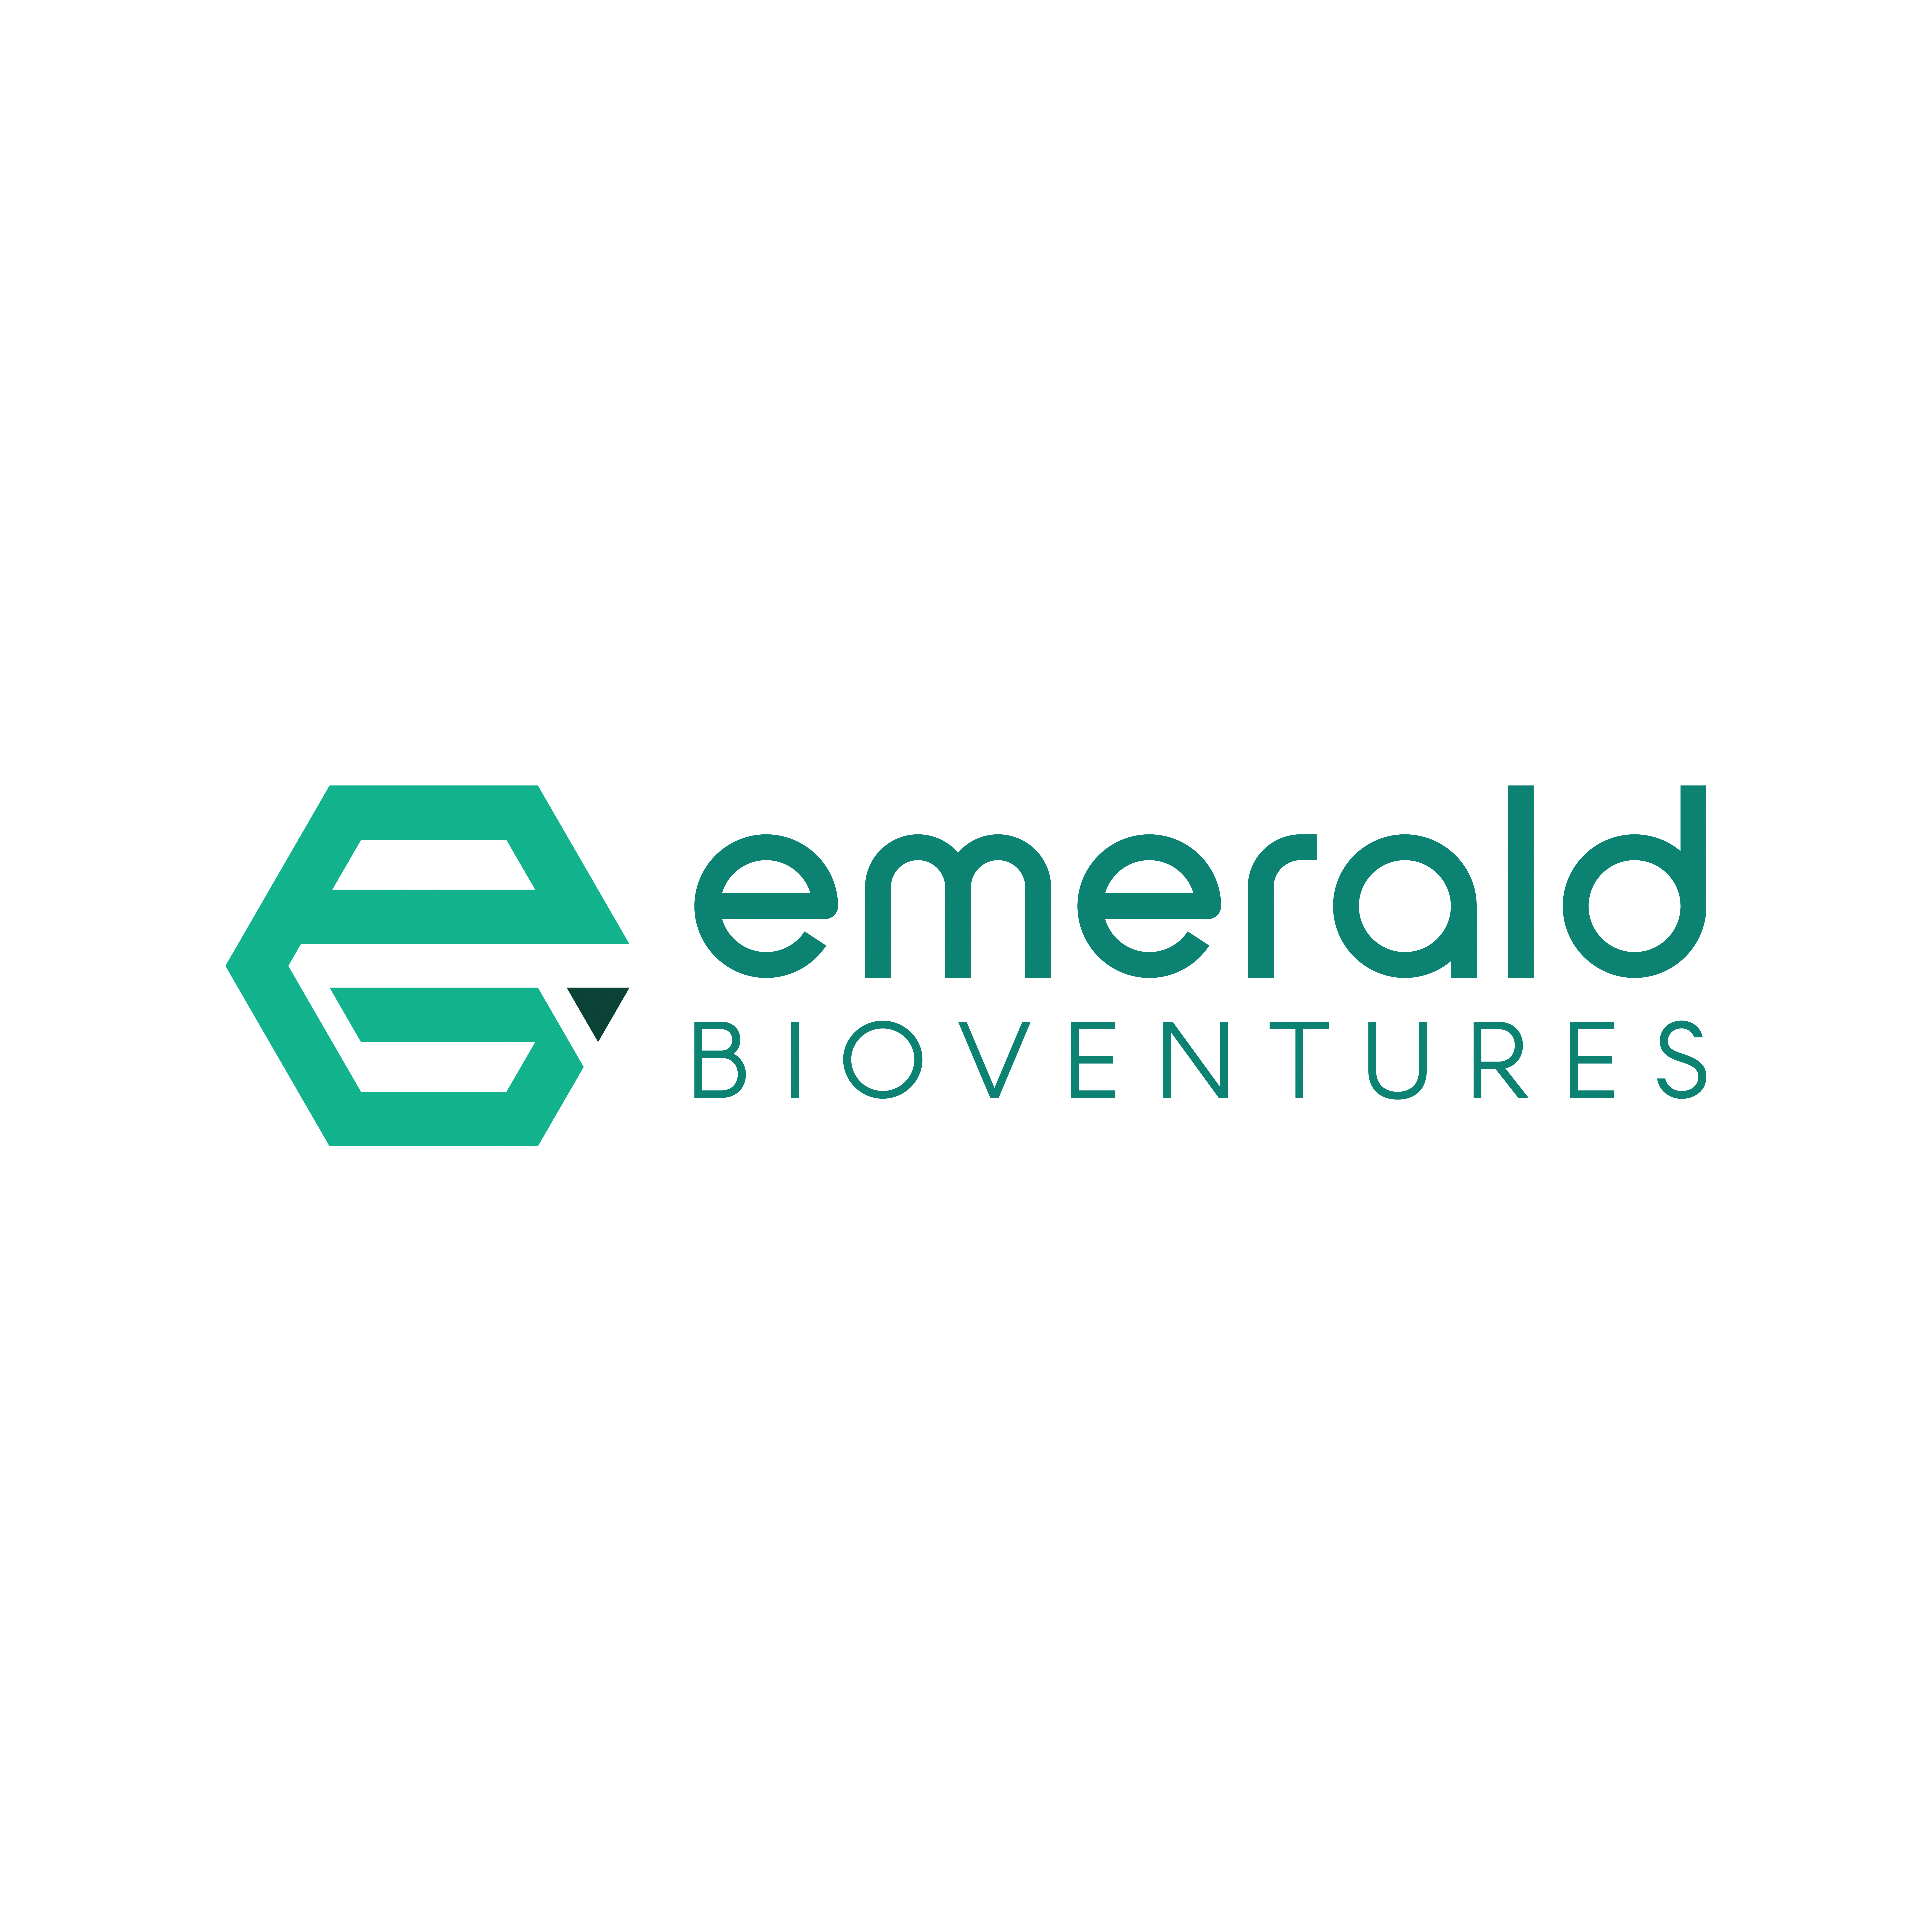 Emerald Bioventures